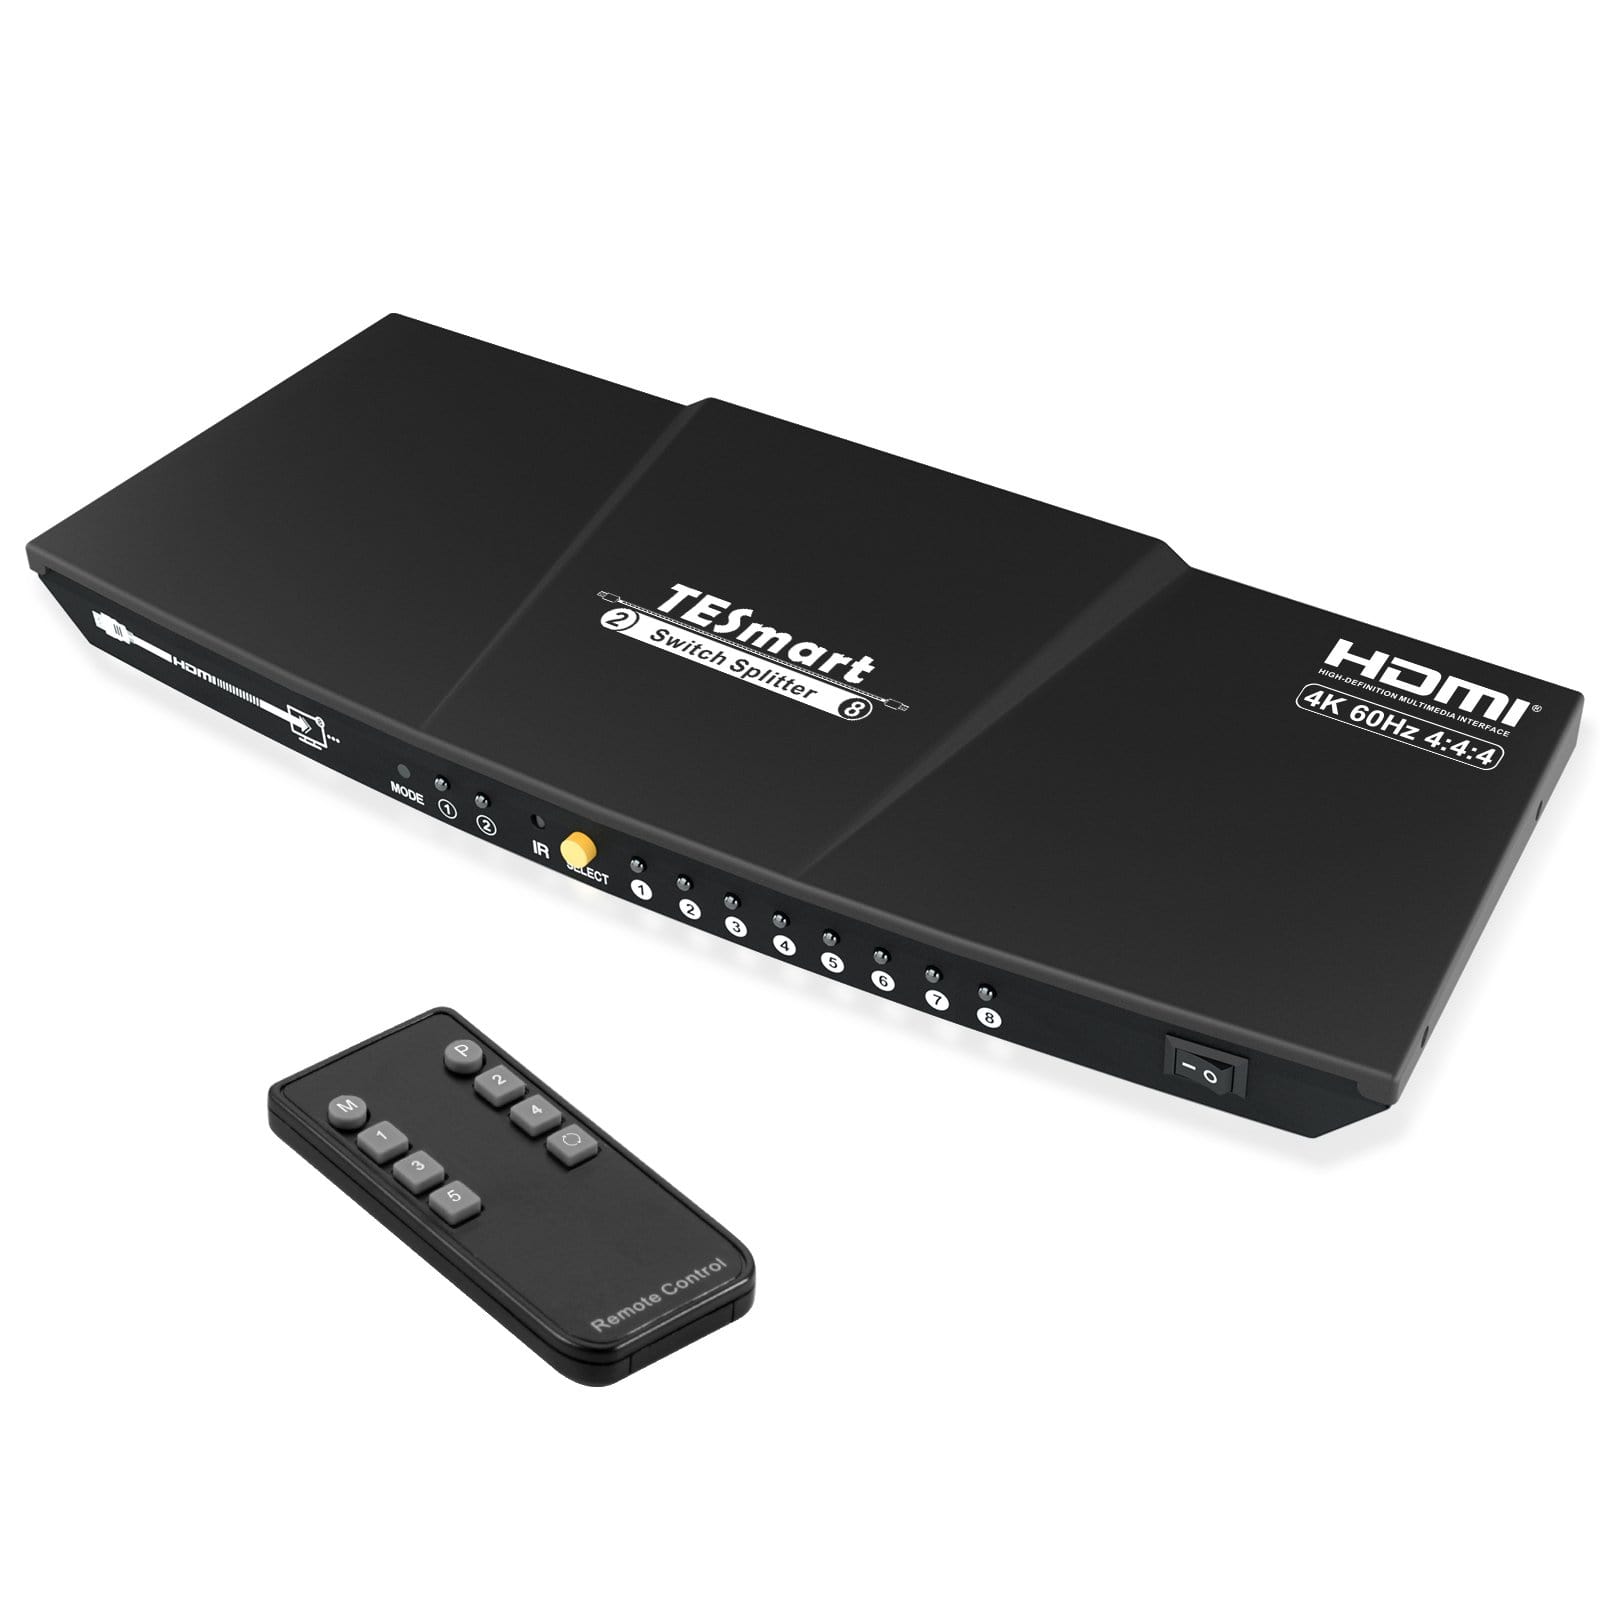 TESmart HSP0208A1U-EUBK HDMI Splitter 2x8 HDMI Splitter 4K 60Hz für DVD Player TV Box HDMI Splitter  2 in 8 out Unterstützung  4K 60Hz HDR HDCP 2.2 -TESmart EU Plug / Black / 4K@60Hz